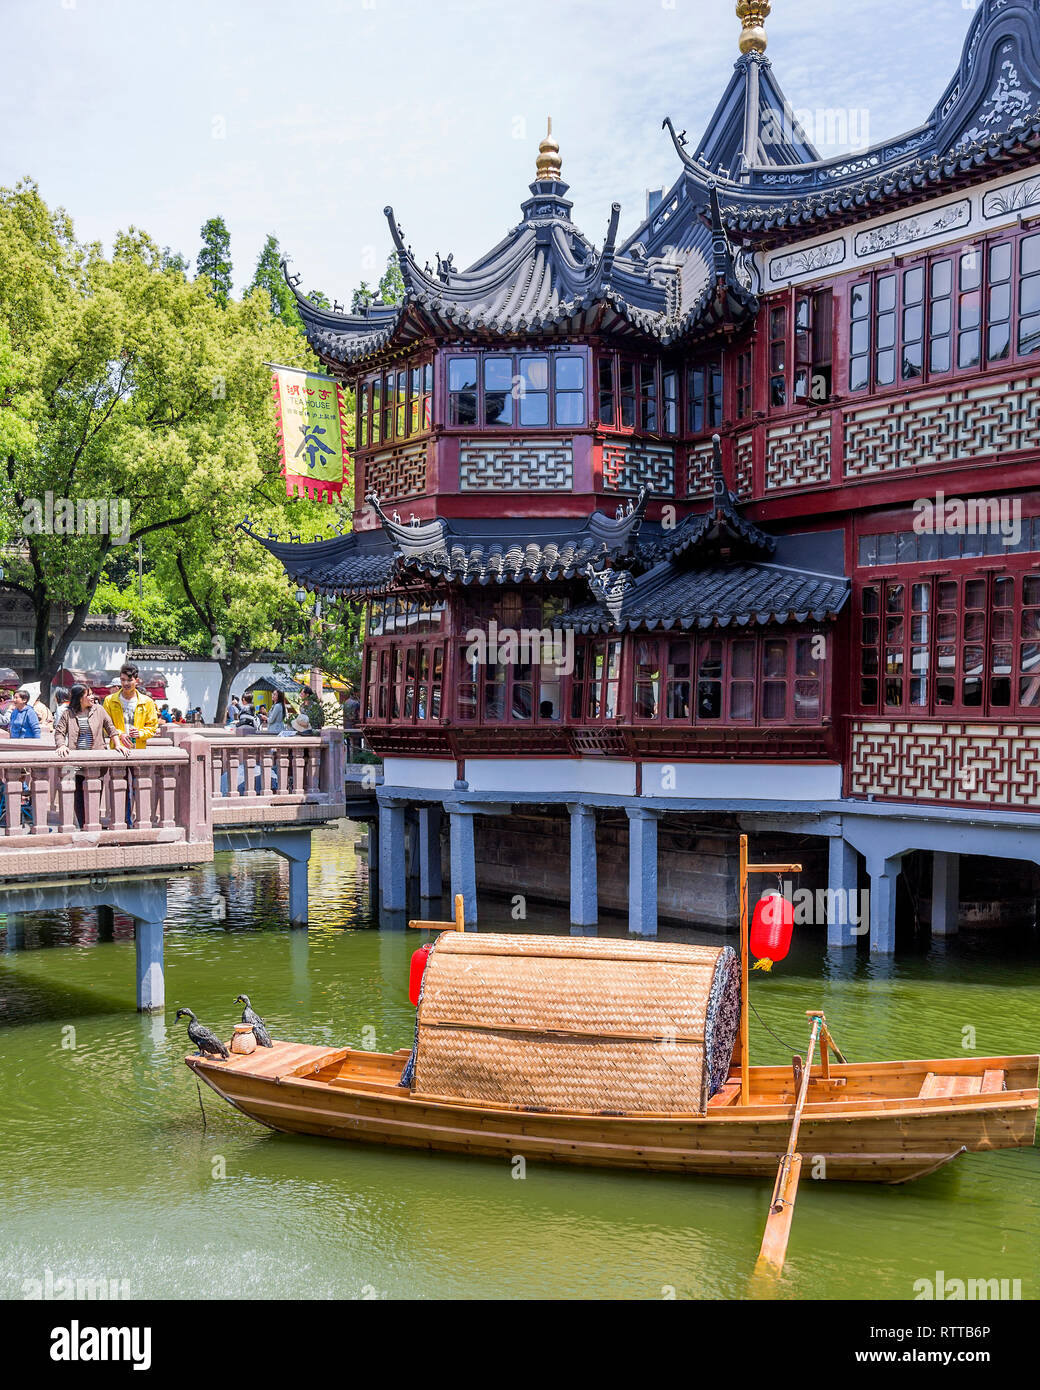 Maison de Thé Huxinting aka mi-salon de thé du pavillon du lac se dresse sur pilotis au milieu d'un lac artificiel. Un bateau de pêche chinois traditionnel à l'avant. Banque D'Images